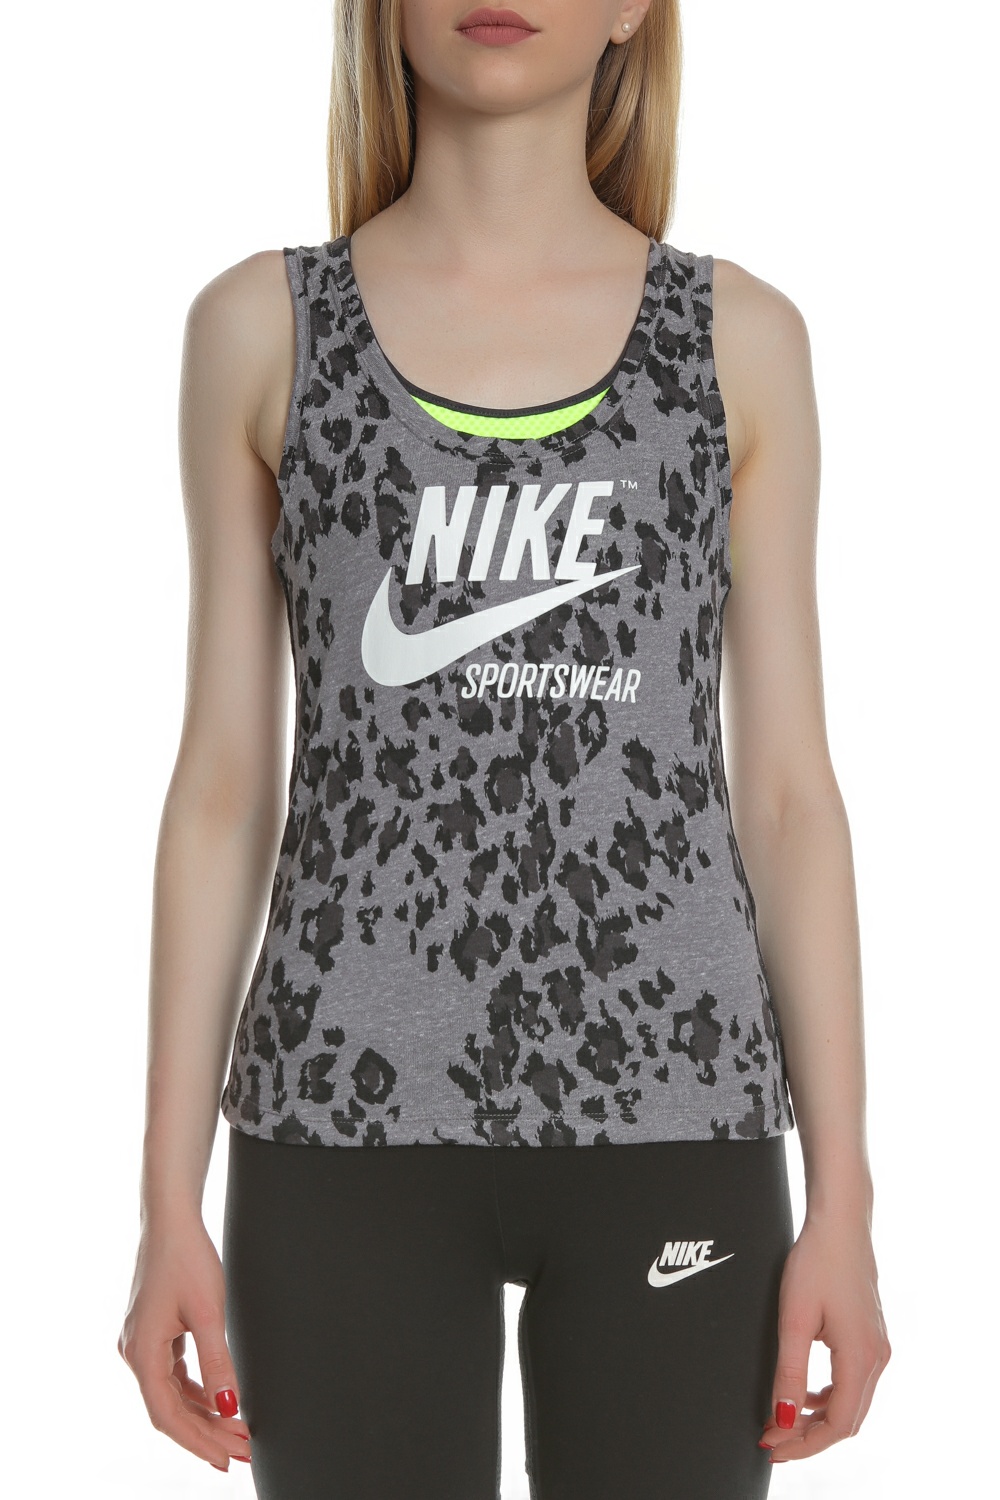 NIKE - Γυναικείο φανελάκι Nike Sportswear Gym Vintage Wo γκρι μαύρο Γυναικεία/Ρούχα/Αθλητικά/T-shirt-Τοπ